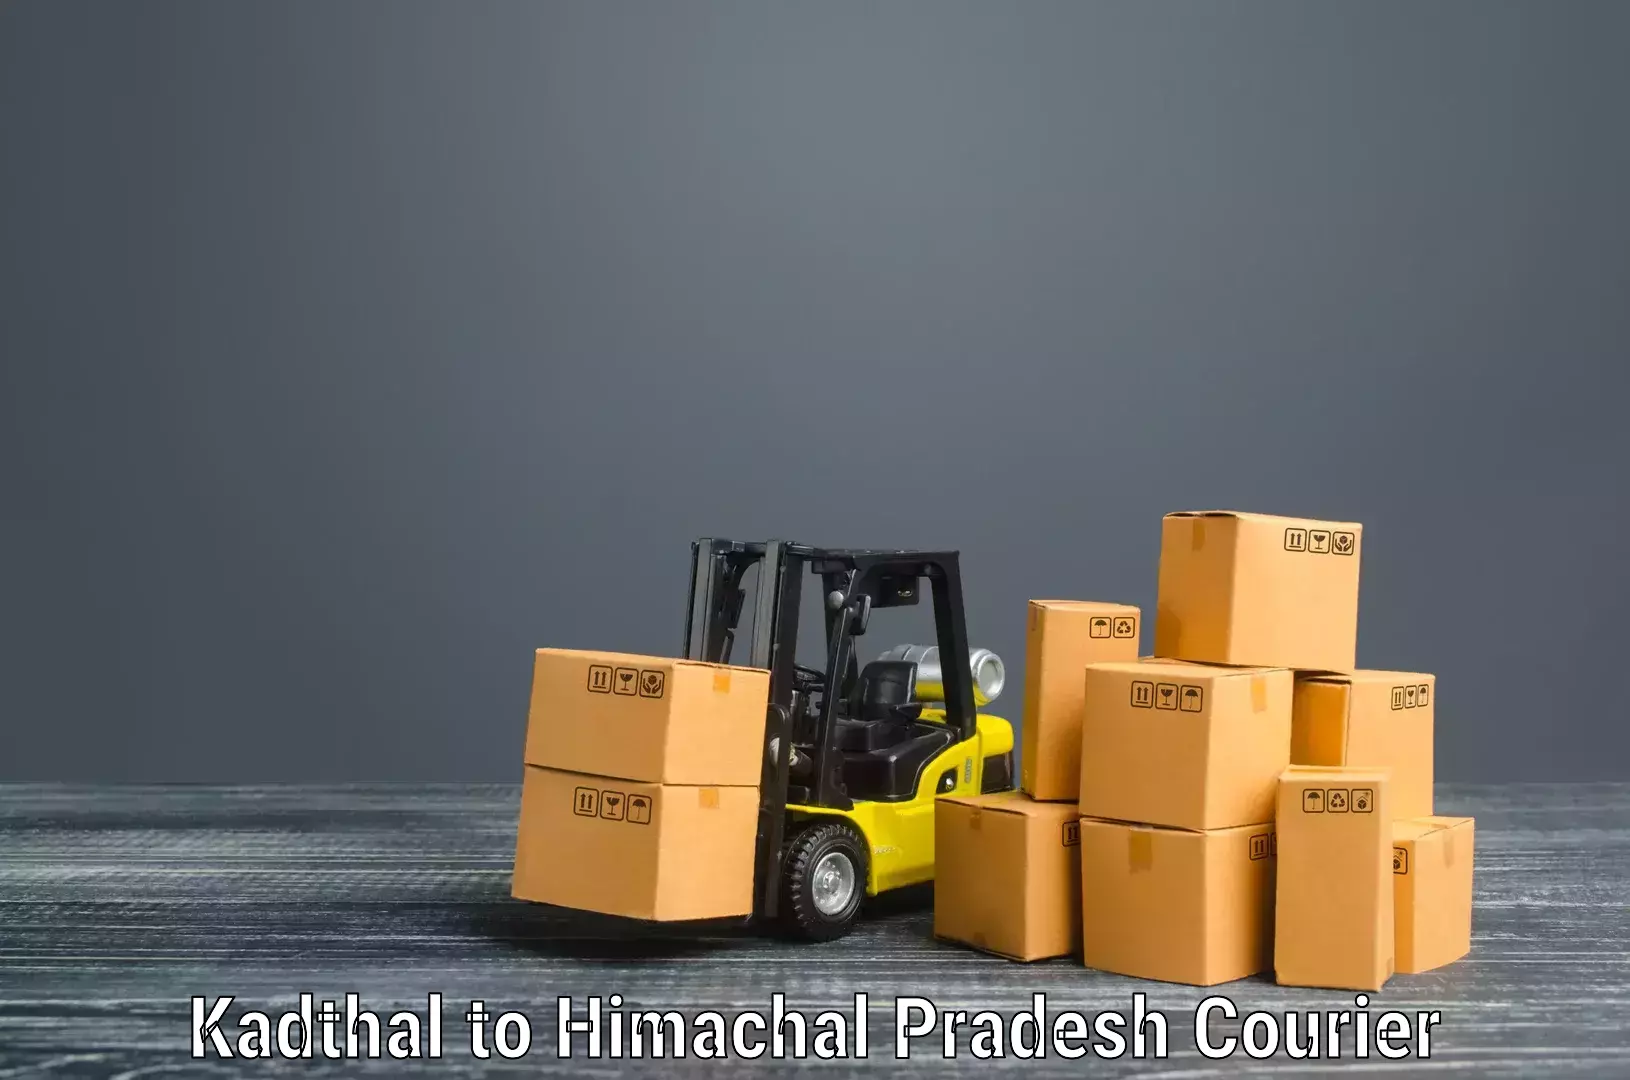 Professional moving company Kadthal to Himachal Pradesh